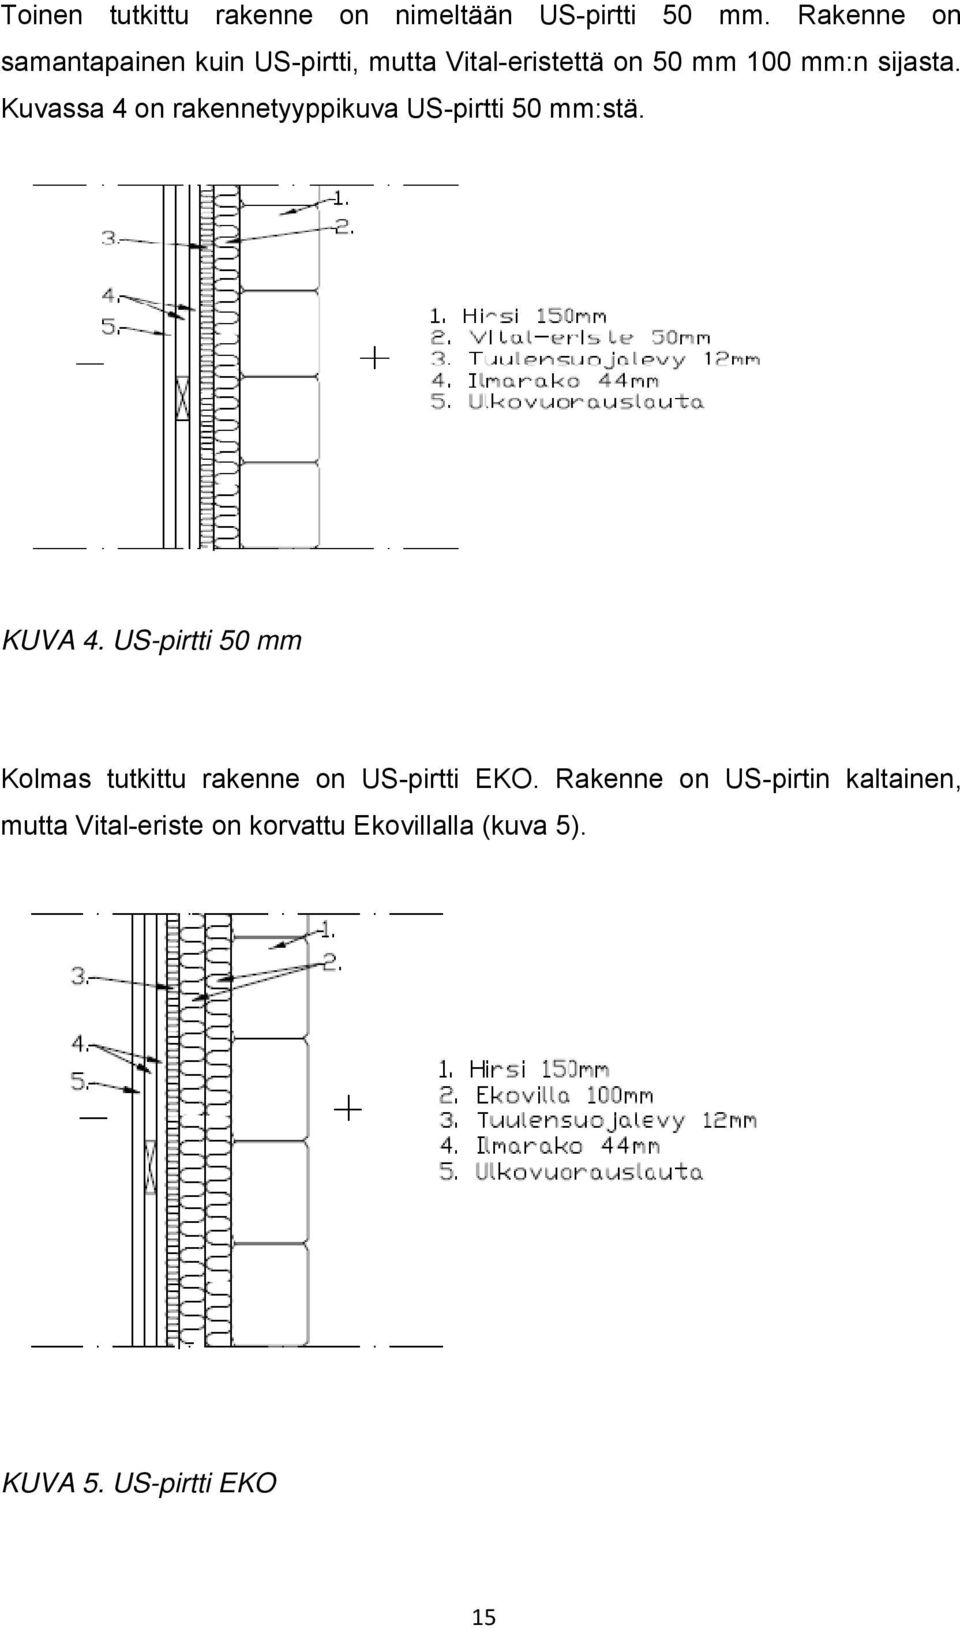 Kuvassa 4 on rakennetyyppikuva US-pirtti 50 mm:stä. KUVA 4.